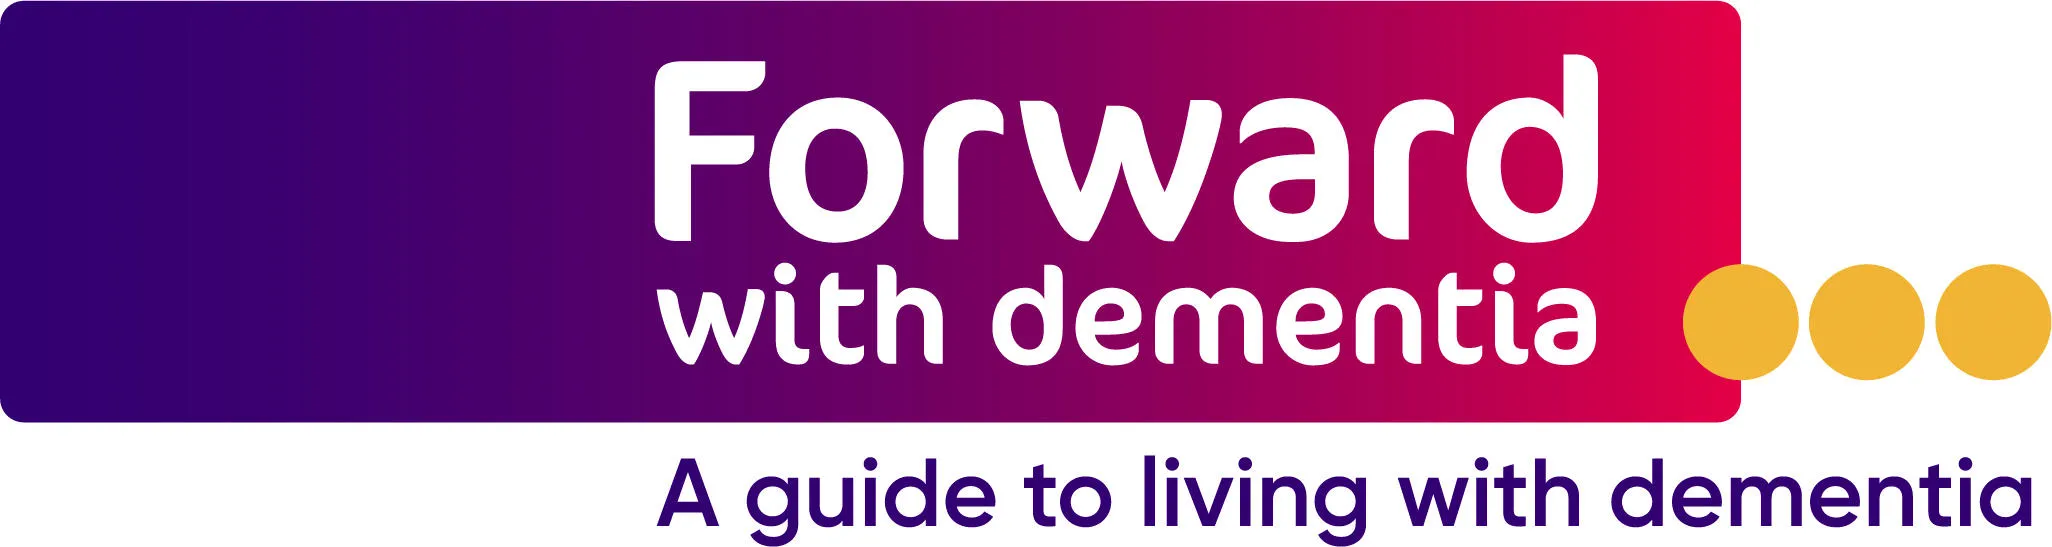 FWD_Forward-Dementia_RGB+Strapline